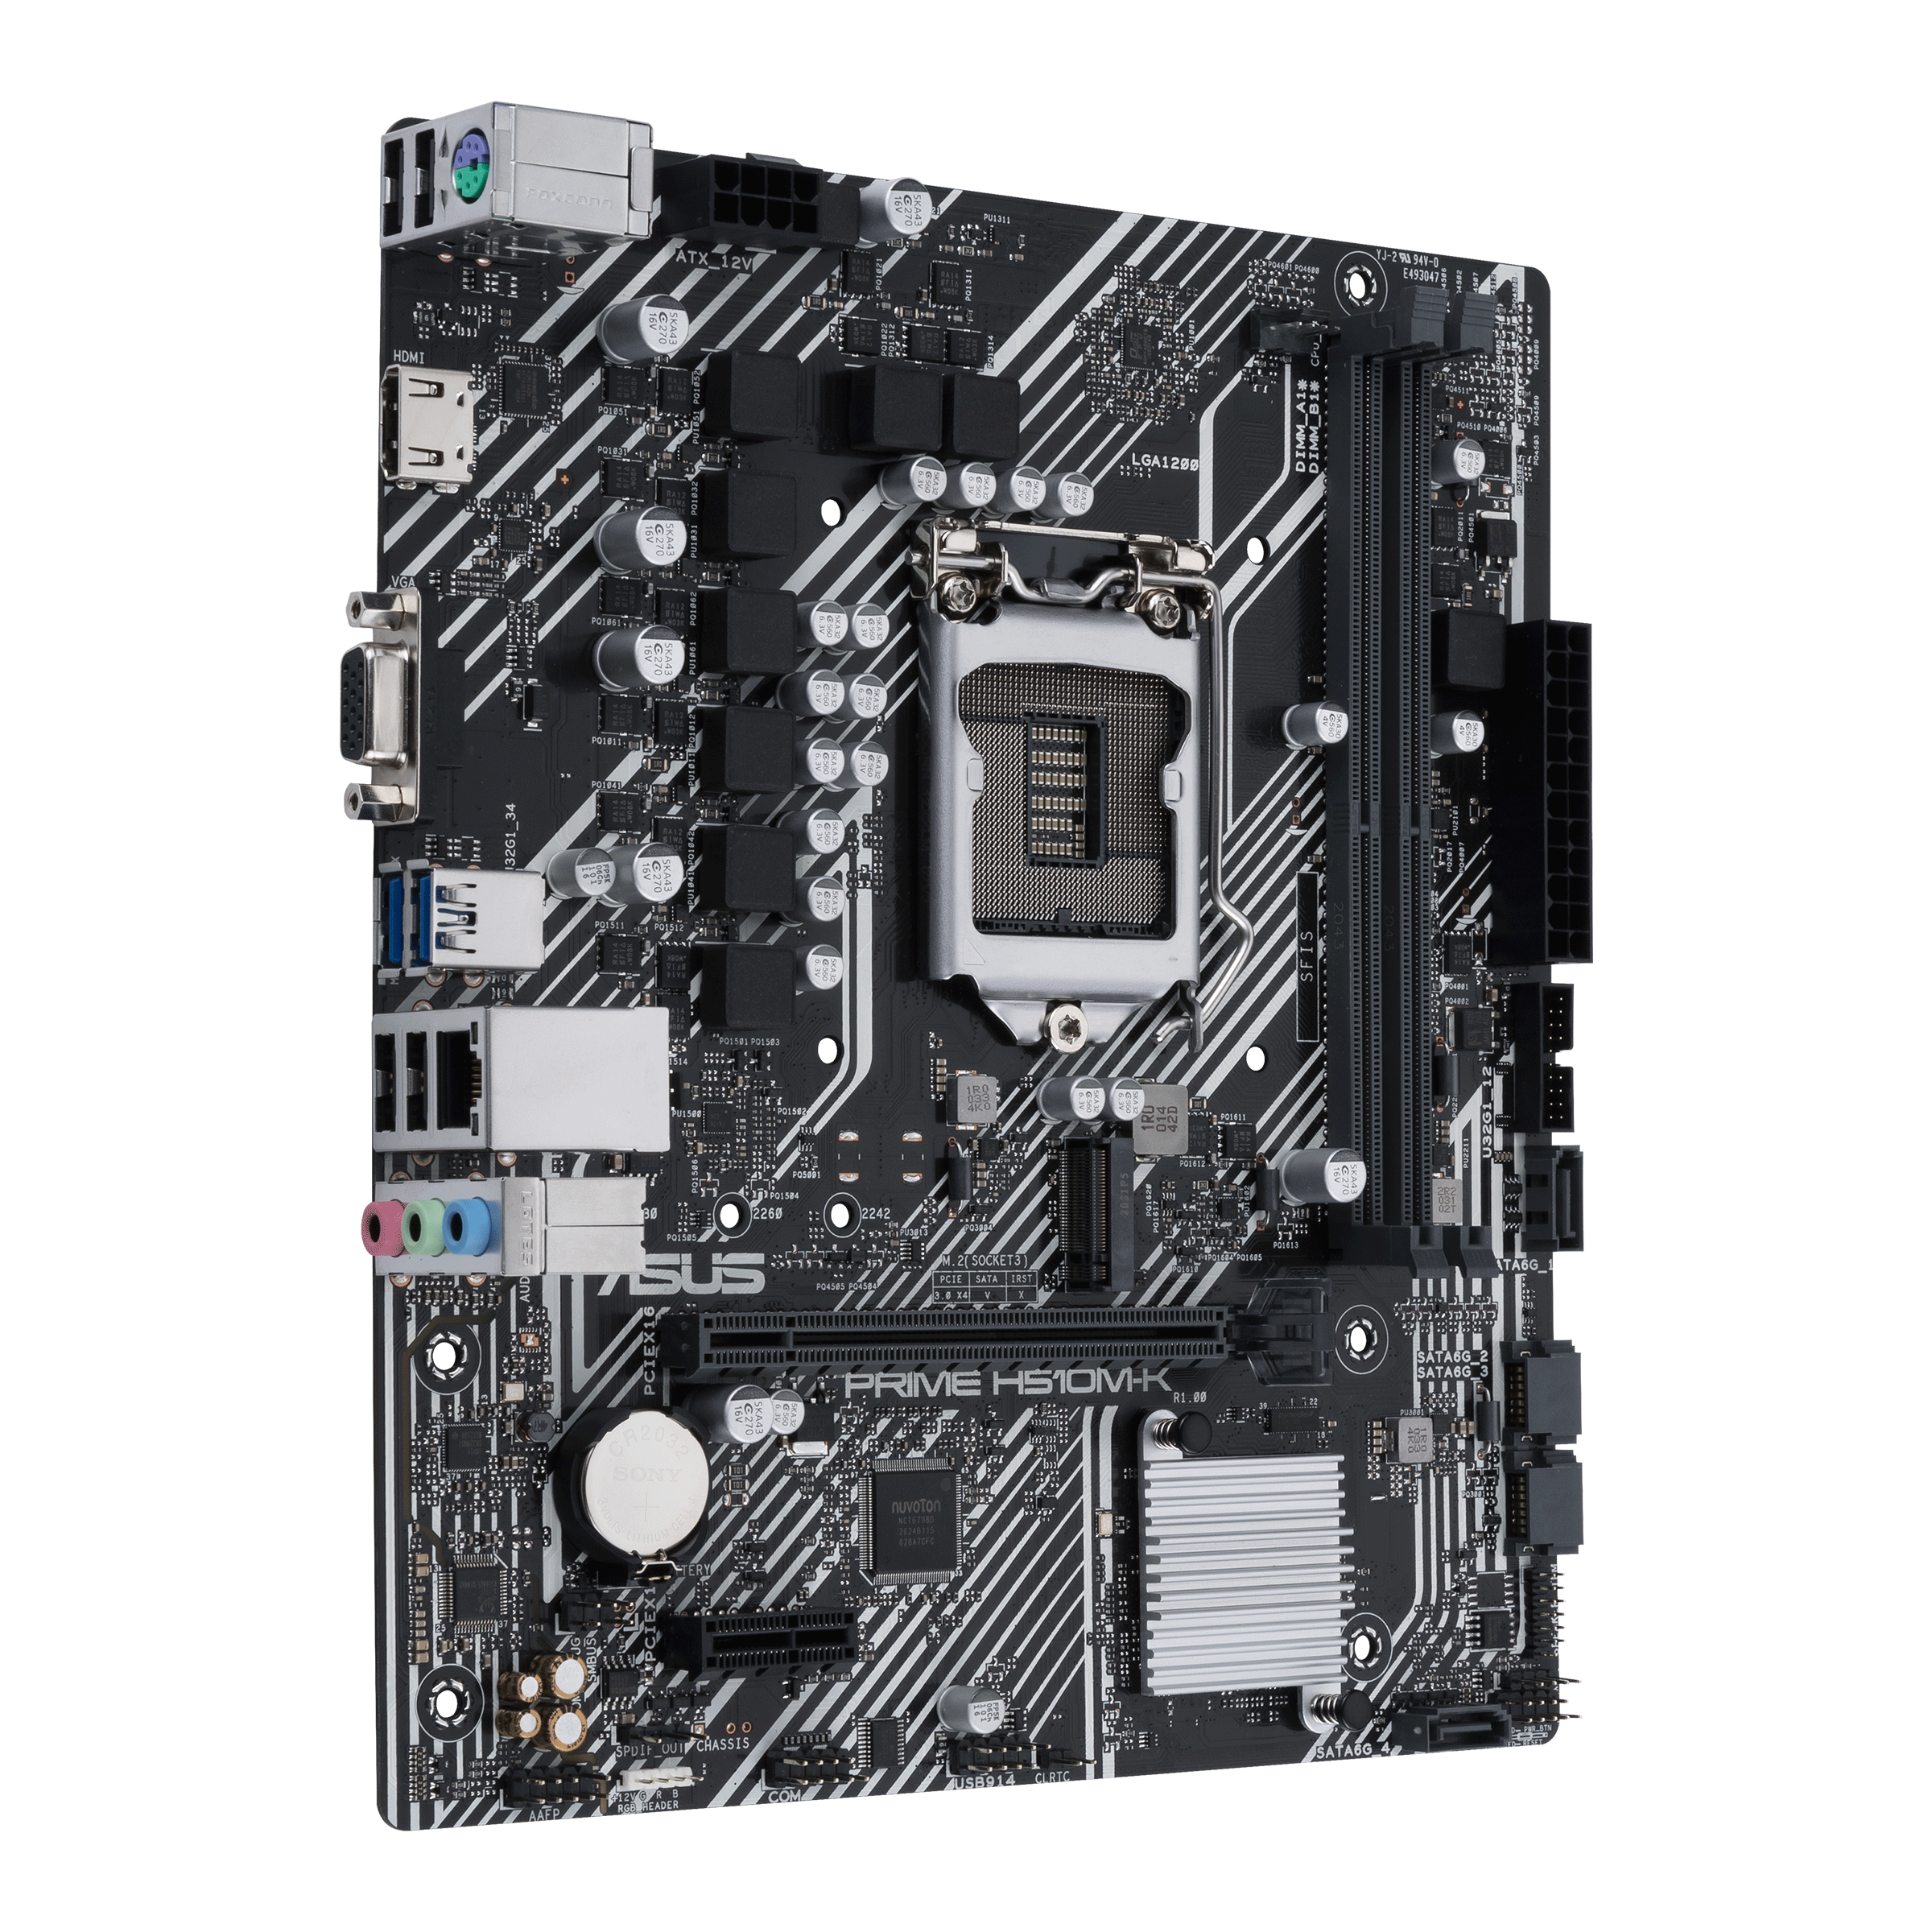 Asus PRIME H510M-K Intel LGA1200 Motherboard